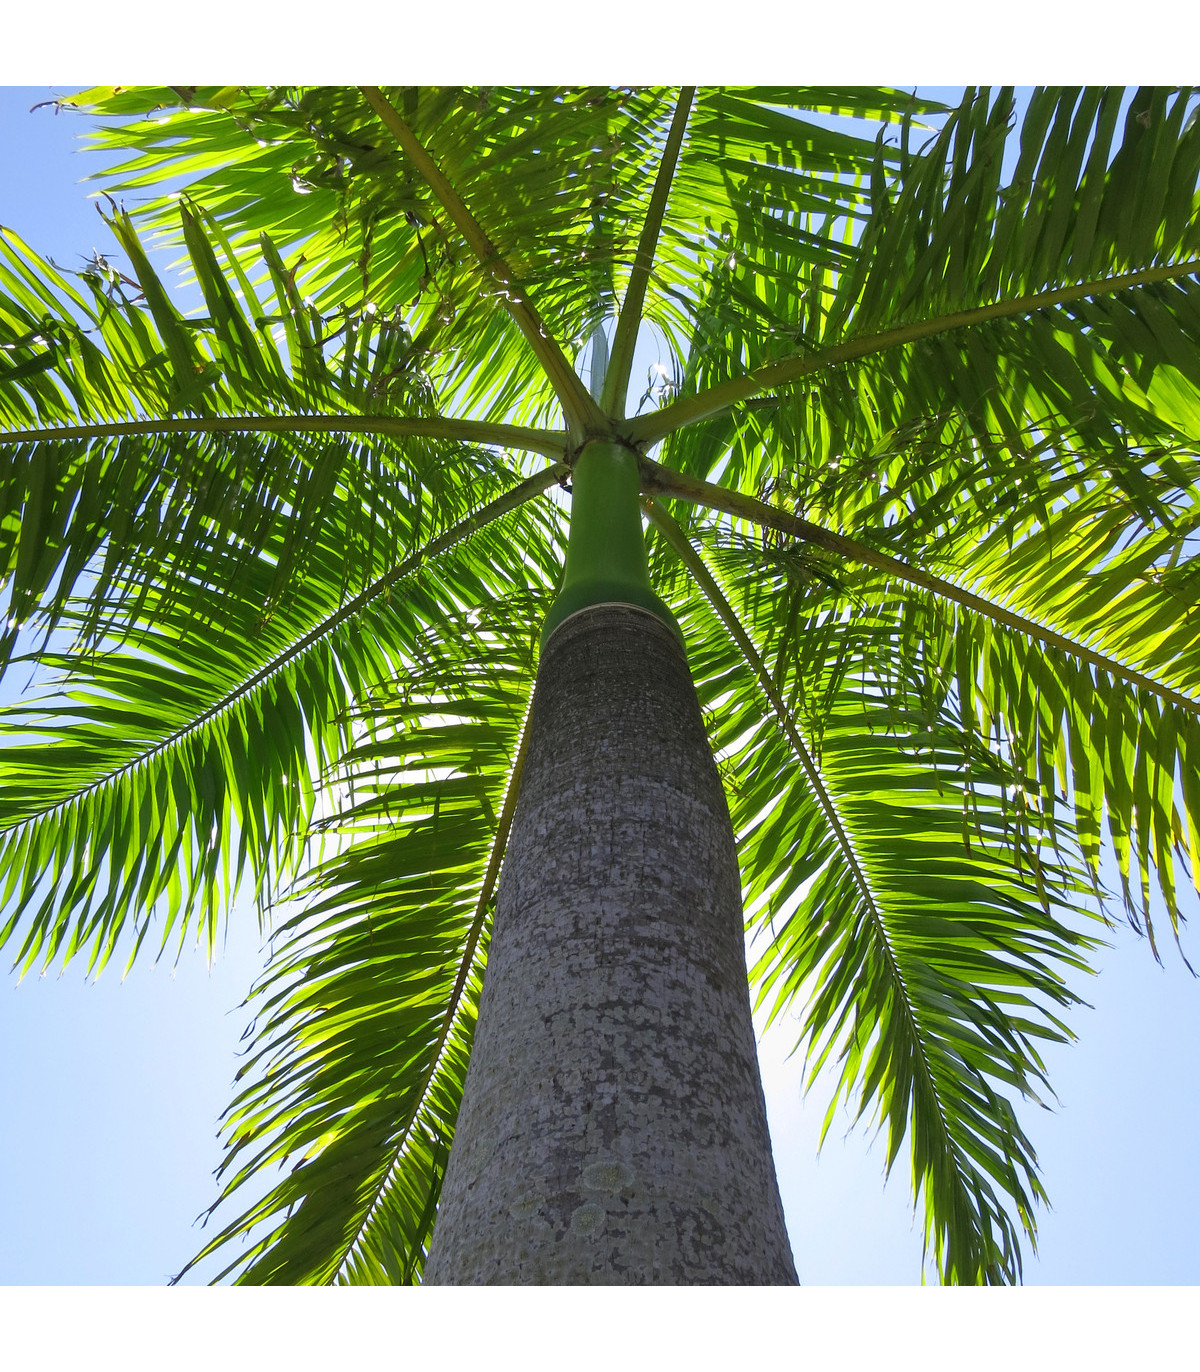 Palma královská kubánská - Roystonea regia - osivo palmy - 3 ks